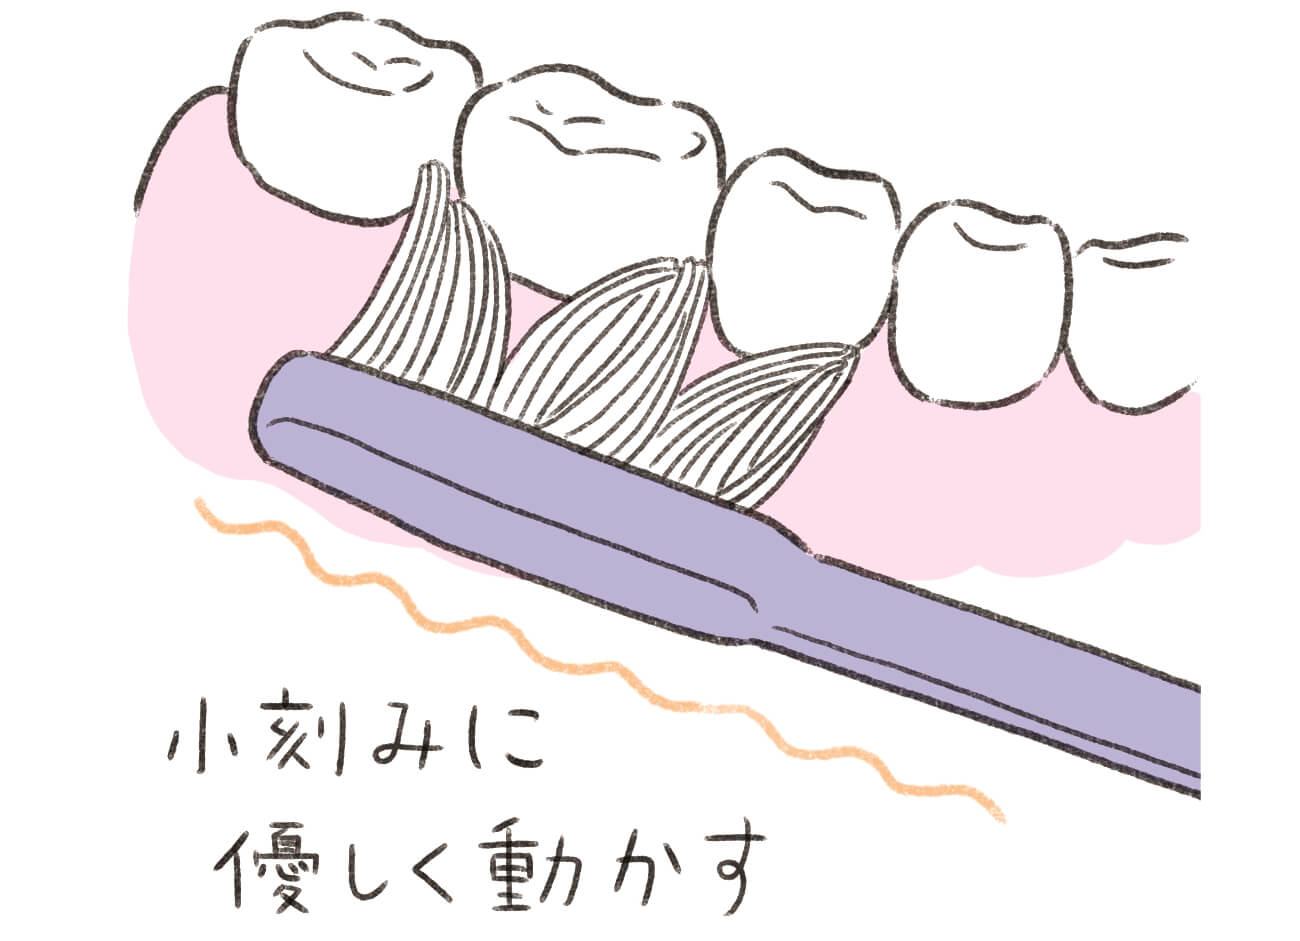 歯磨きは歯肉を傷つけずに汚れを落とす「角度」と「強さ」がポイント